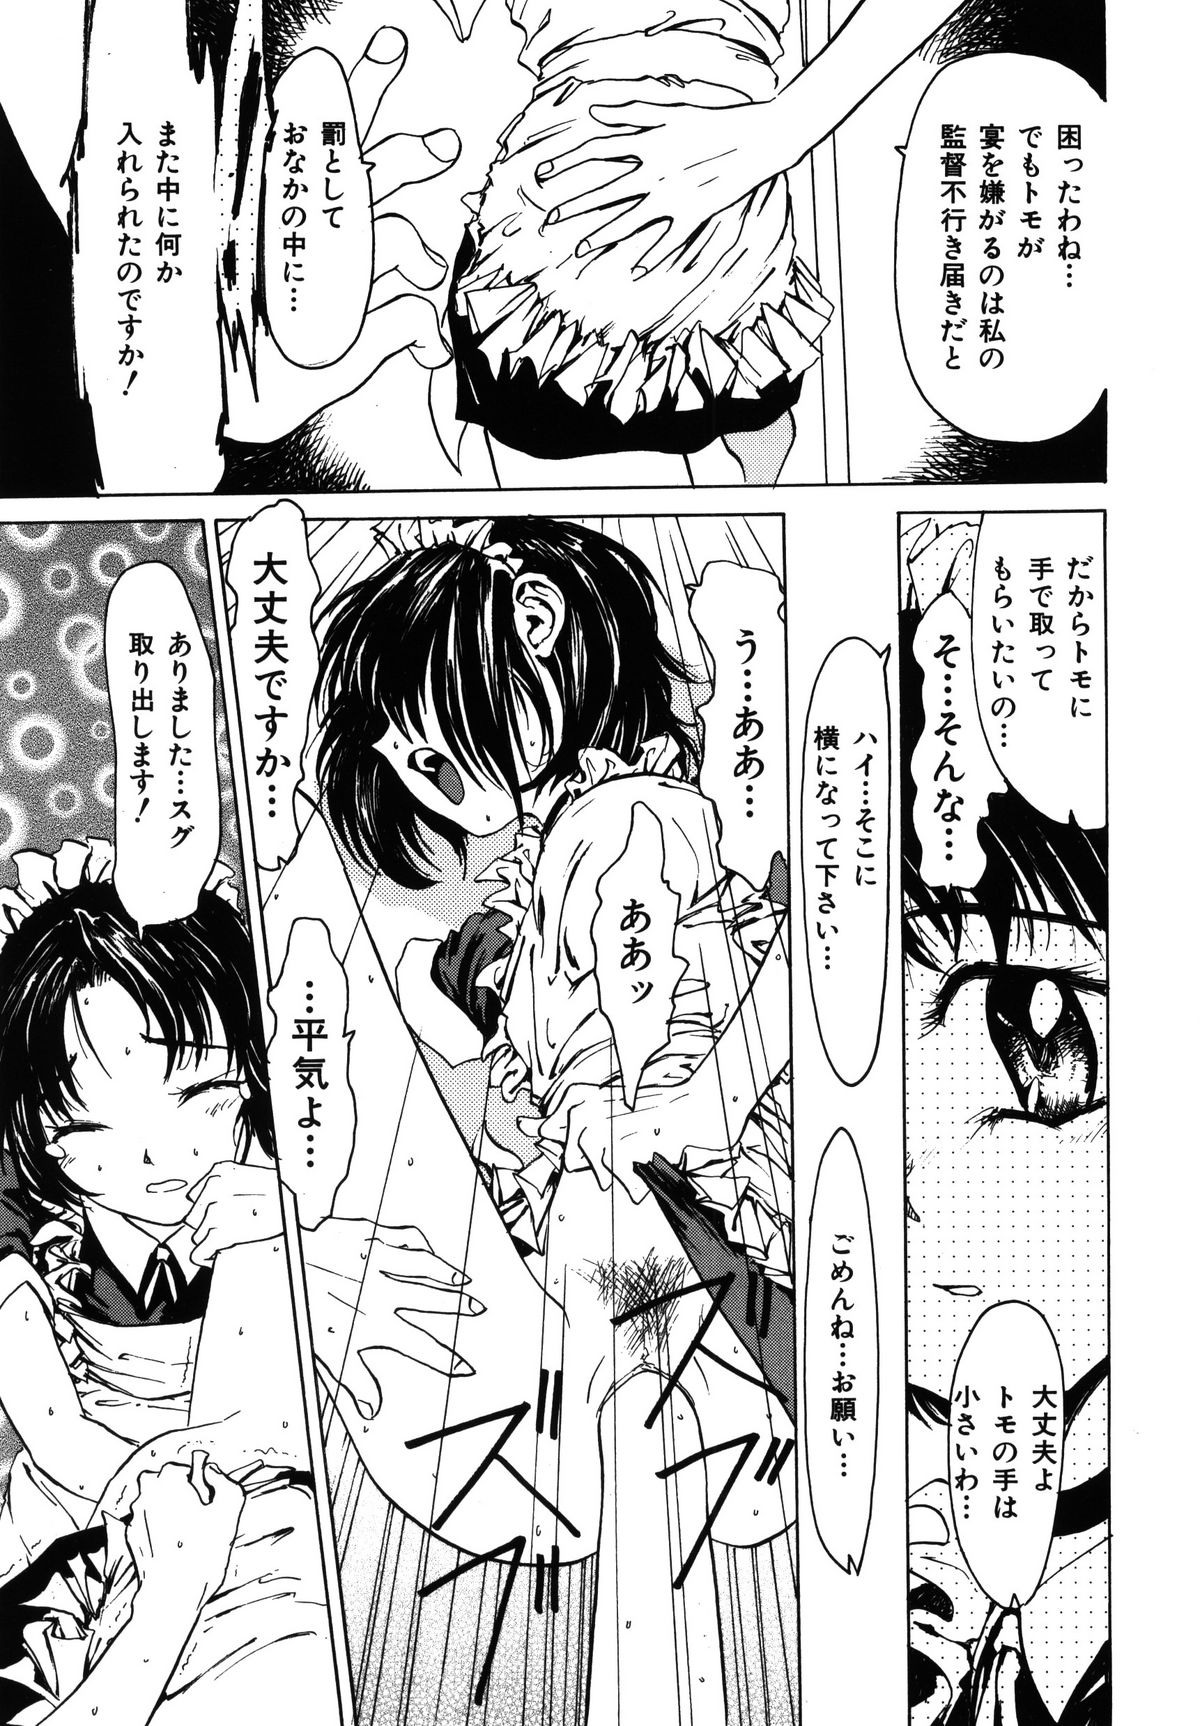 [Akai Nibura] Kayou wa niku no hi page 5 full